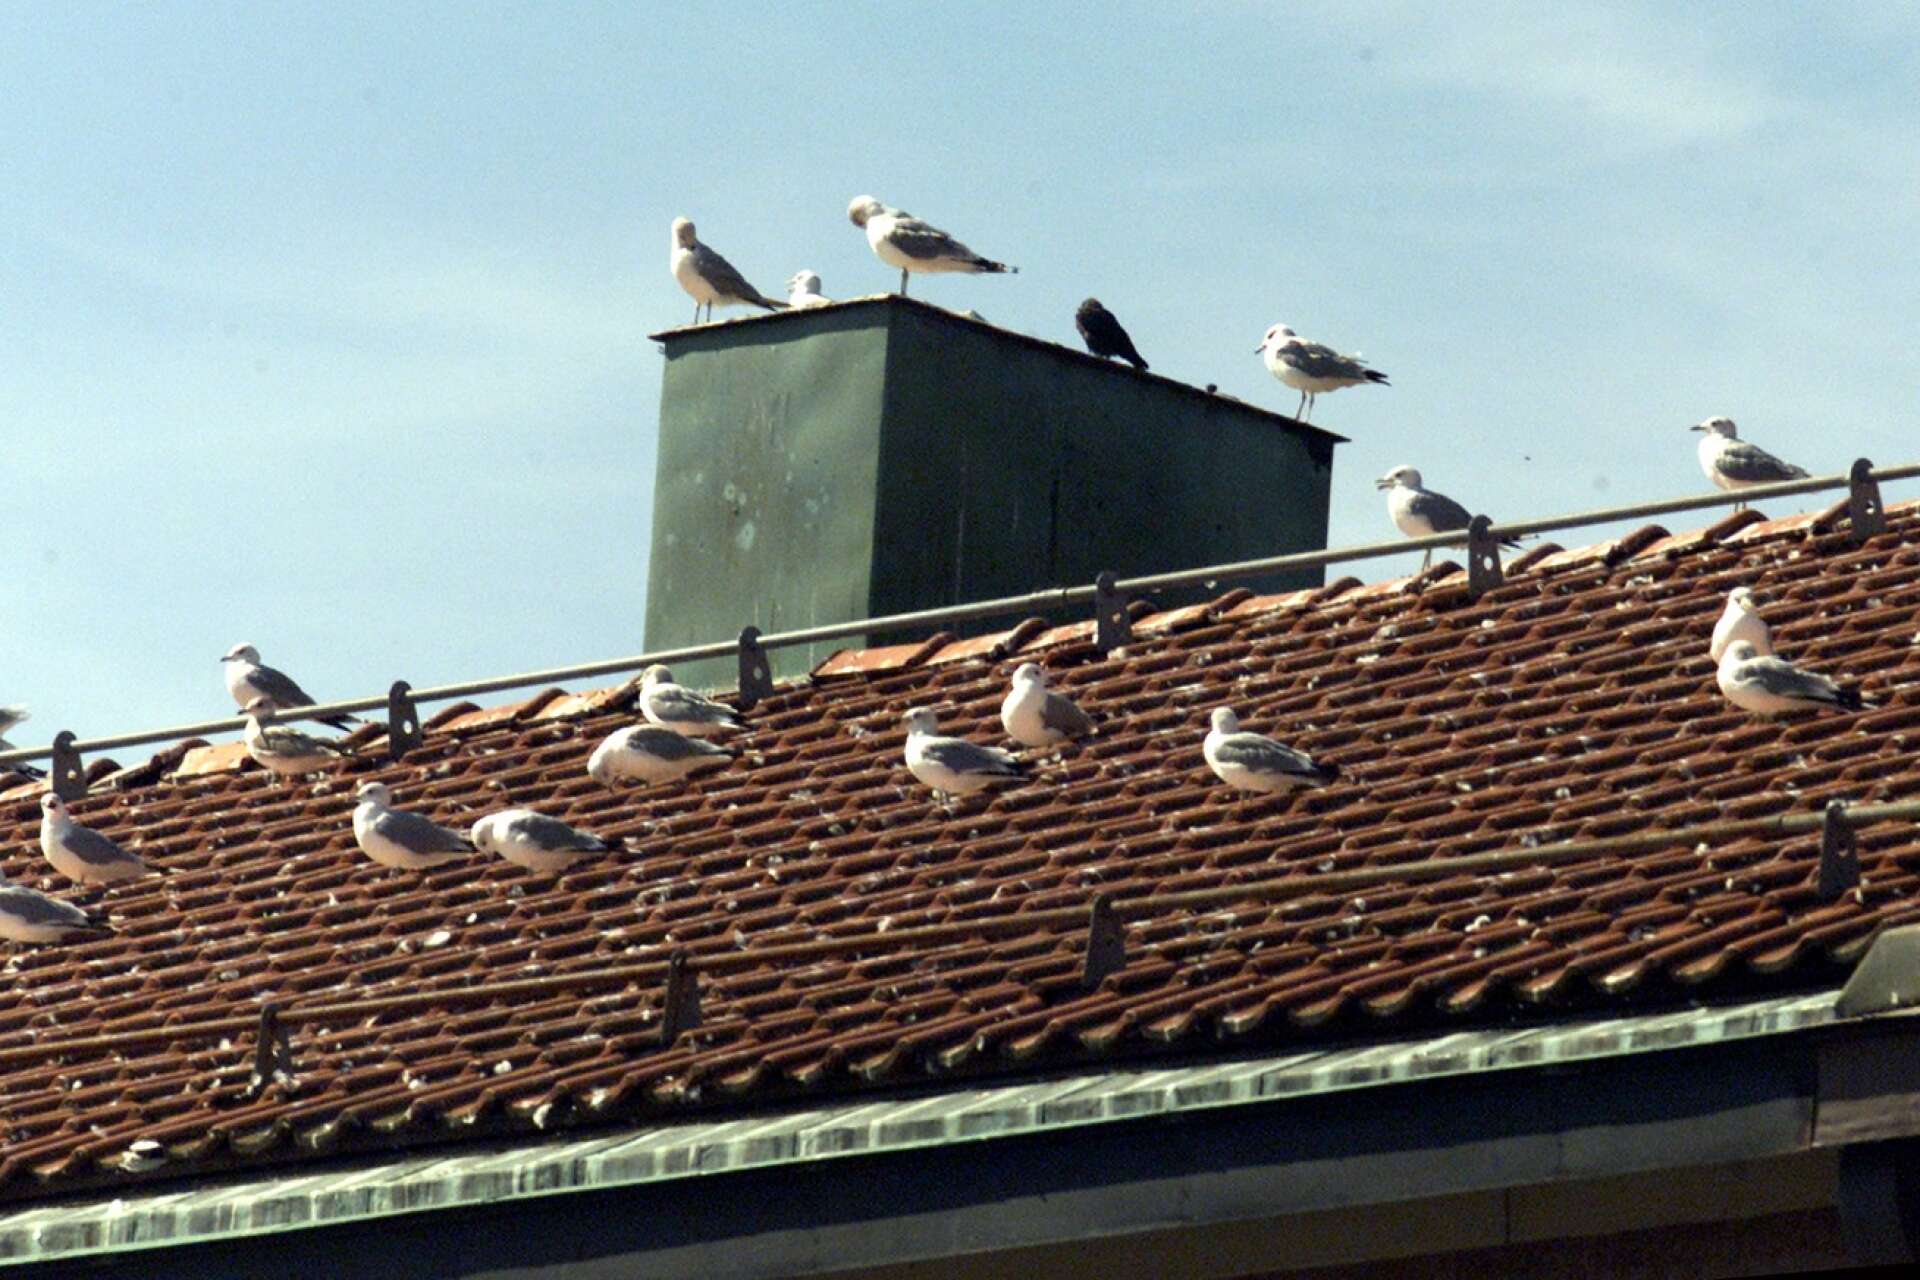 Fastighetsägare är ansvarig för att förebygga störningar från fåglar som häckar på tak eller intill fastigheten, skriver insändarskribenten.